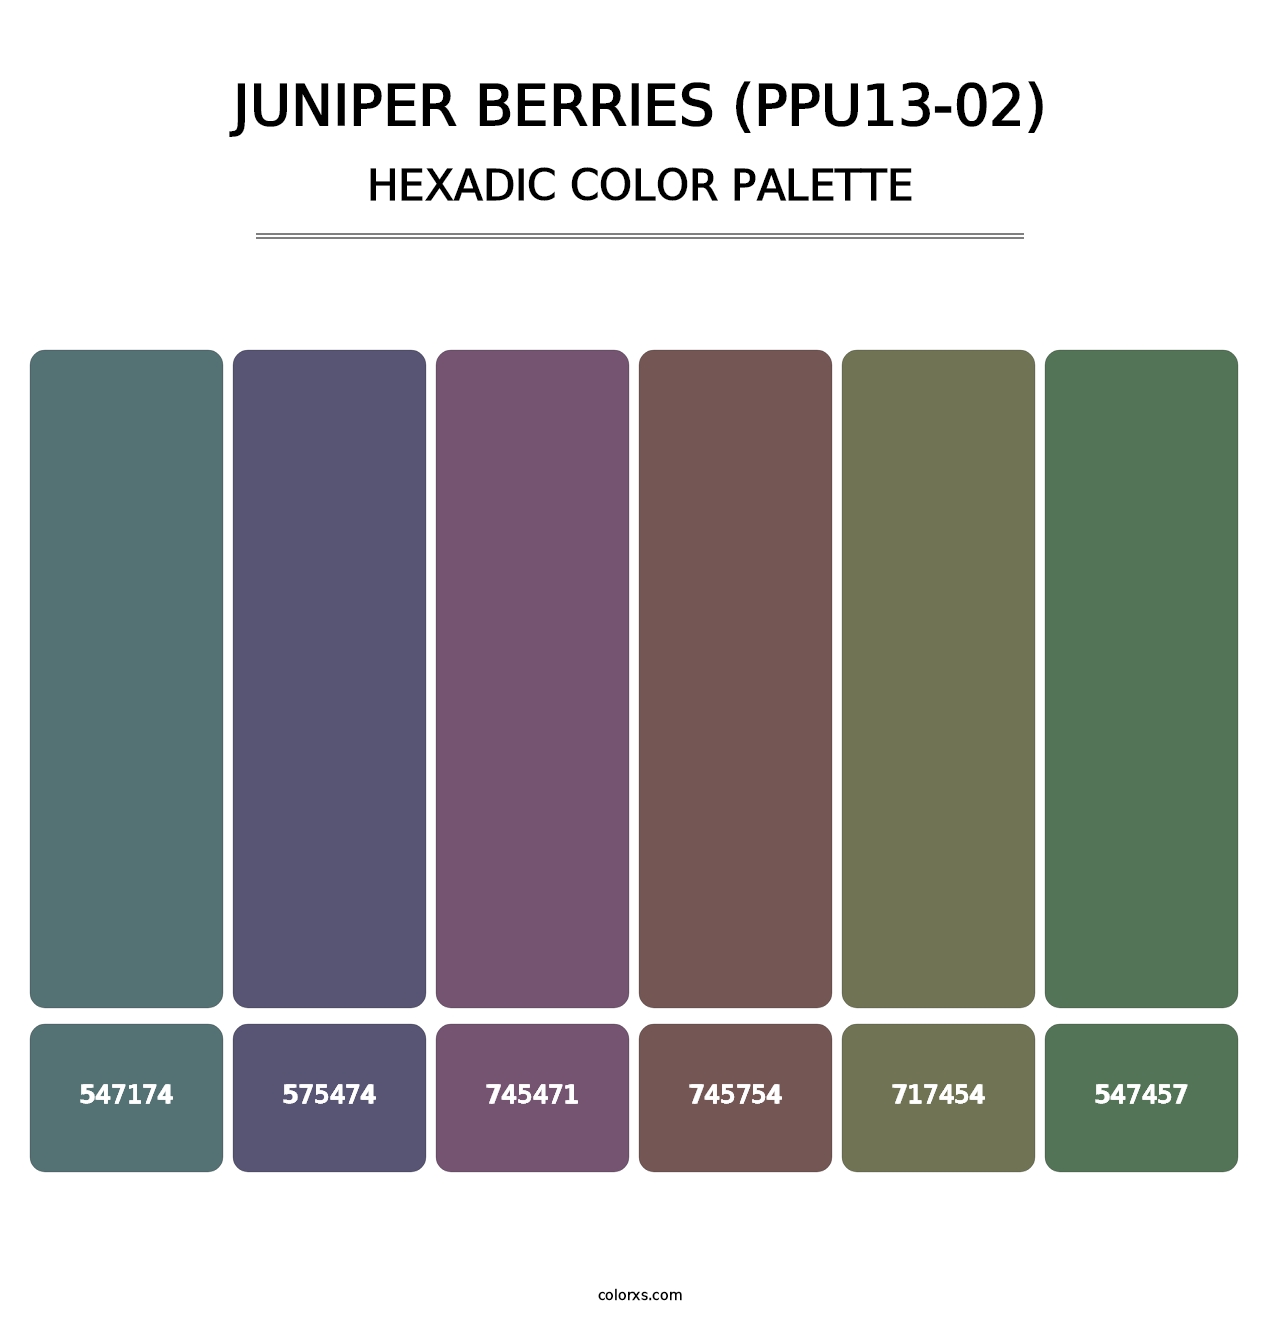 Juniper Berries (PPU13-02) - Hexadic Color Palette